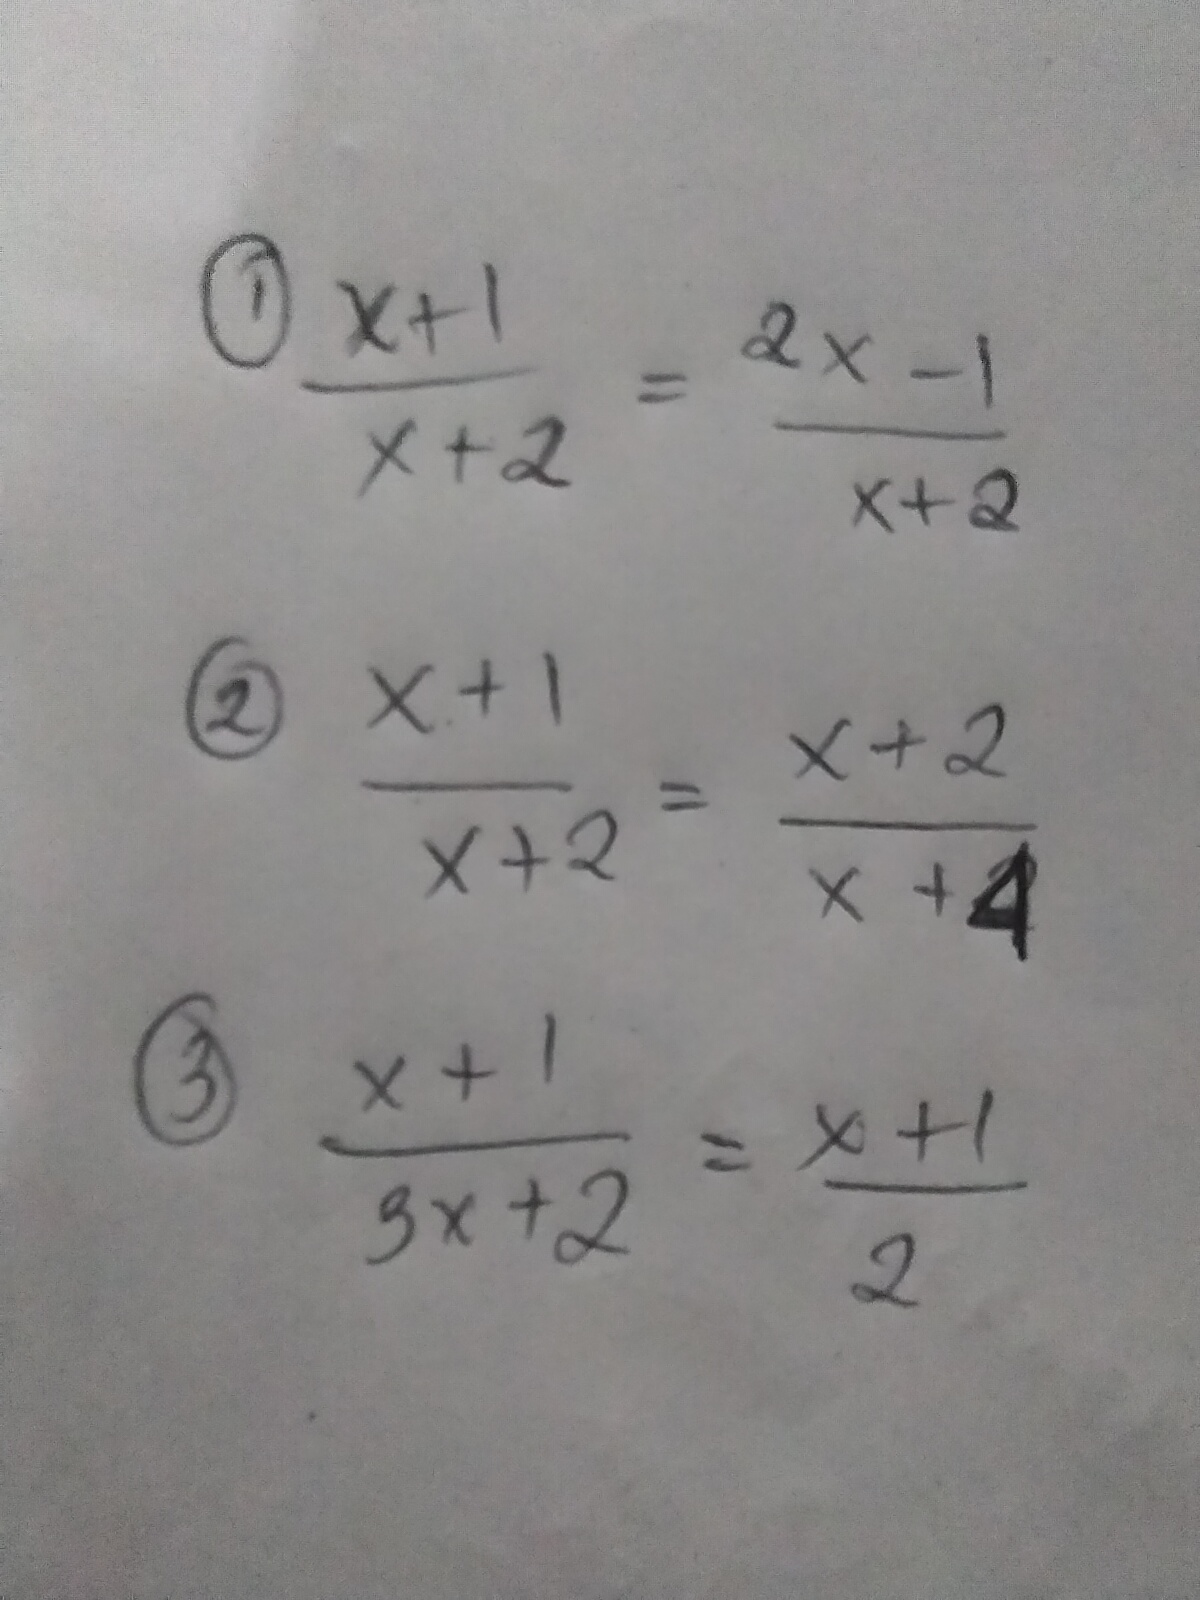 2x-1
%3D
メ+2
X+2
2 x+1
メ+2
ニ
X+2
× +4
X +1
3x+2
%3D
